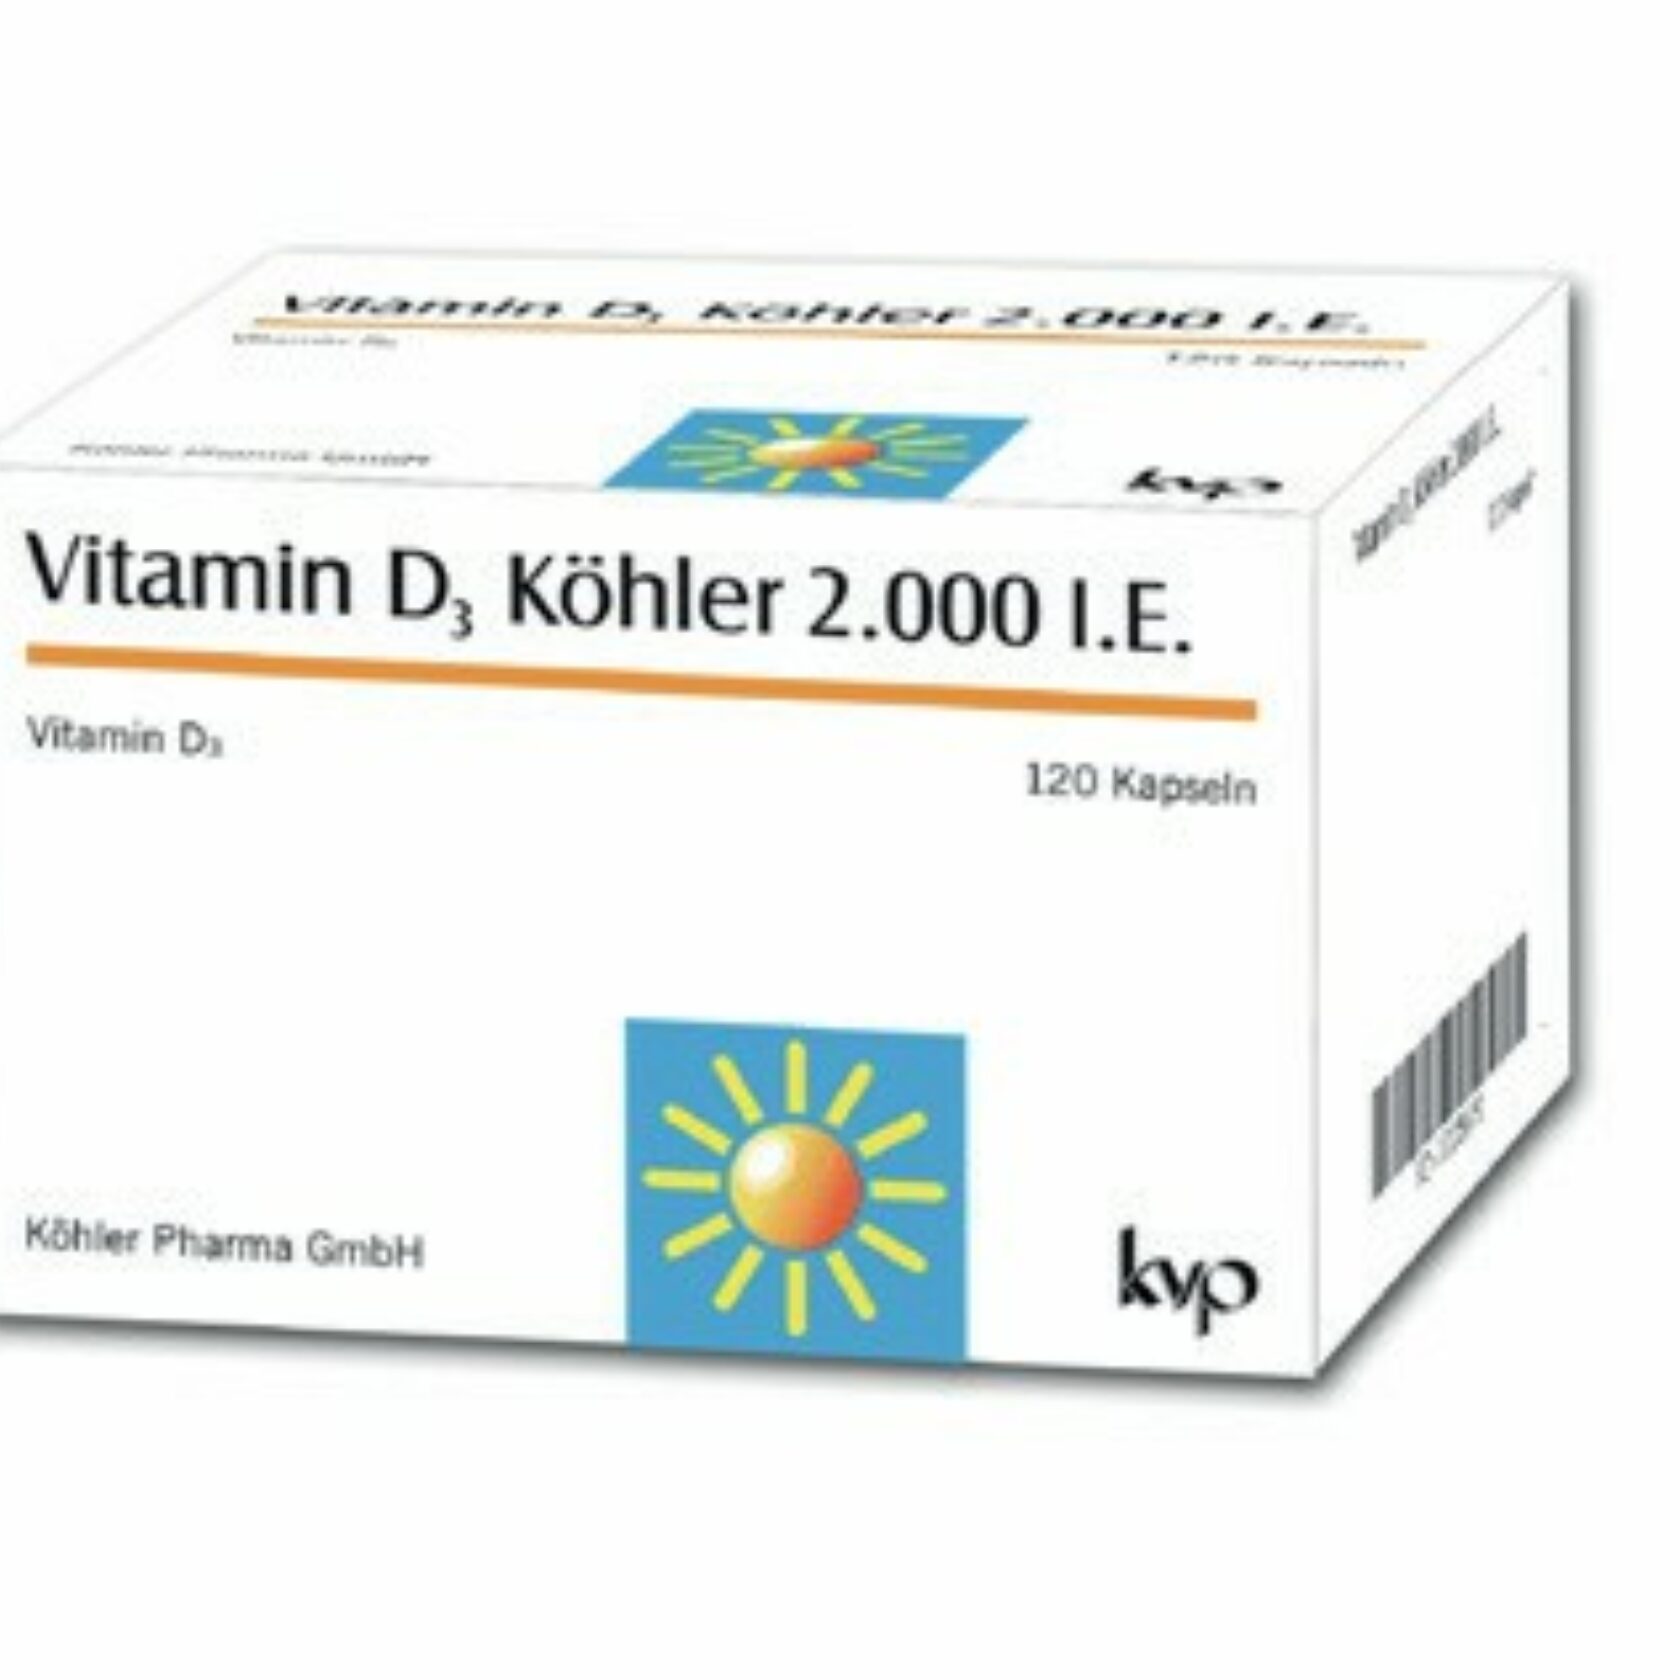 Produktpackung von Vitamin D von Köhler Pharma